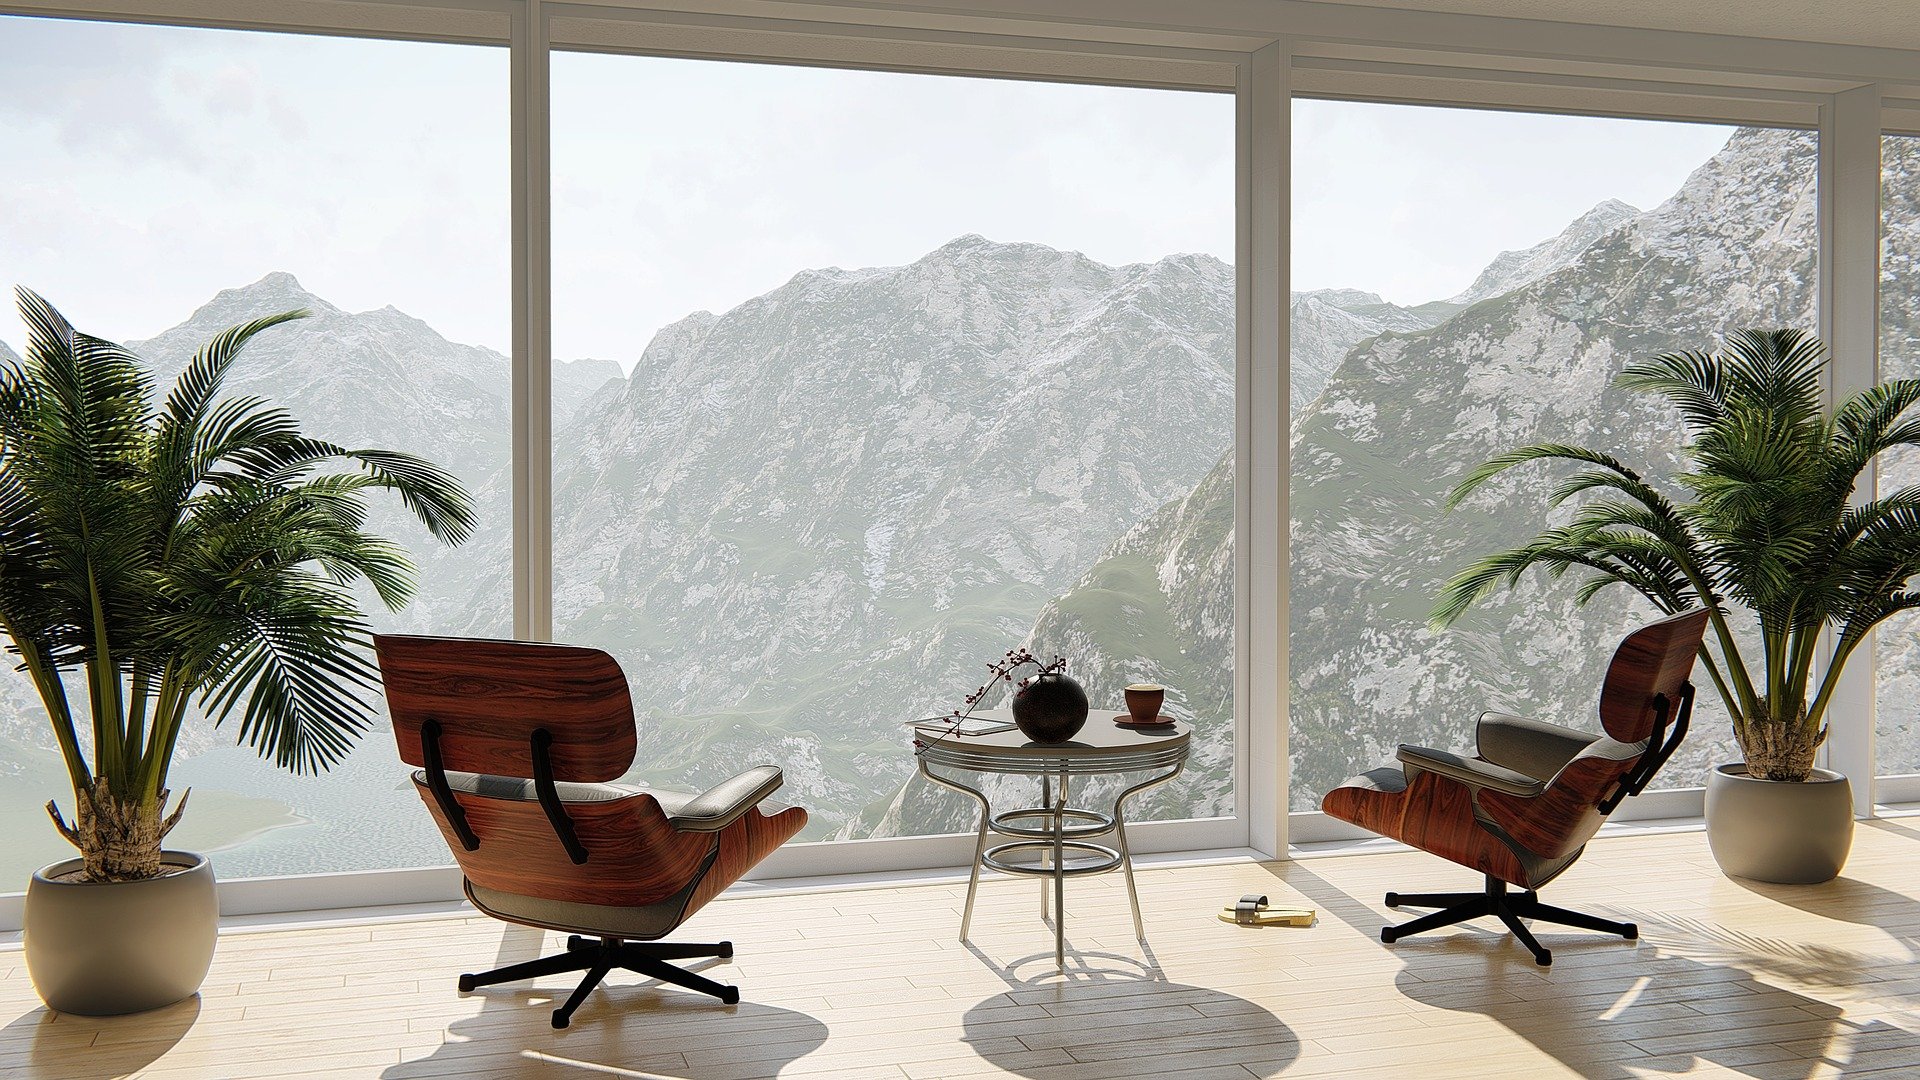 Interior design by Schween & Schween, Marbella